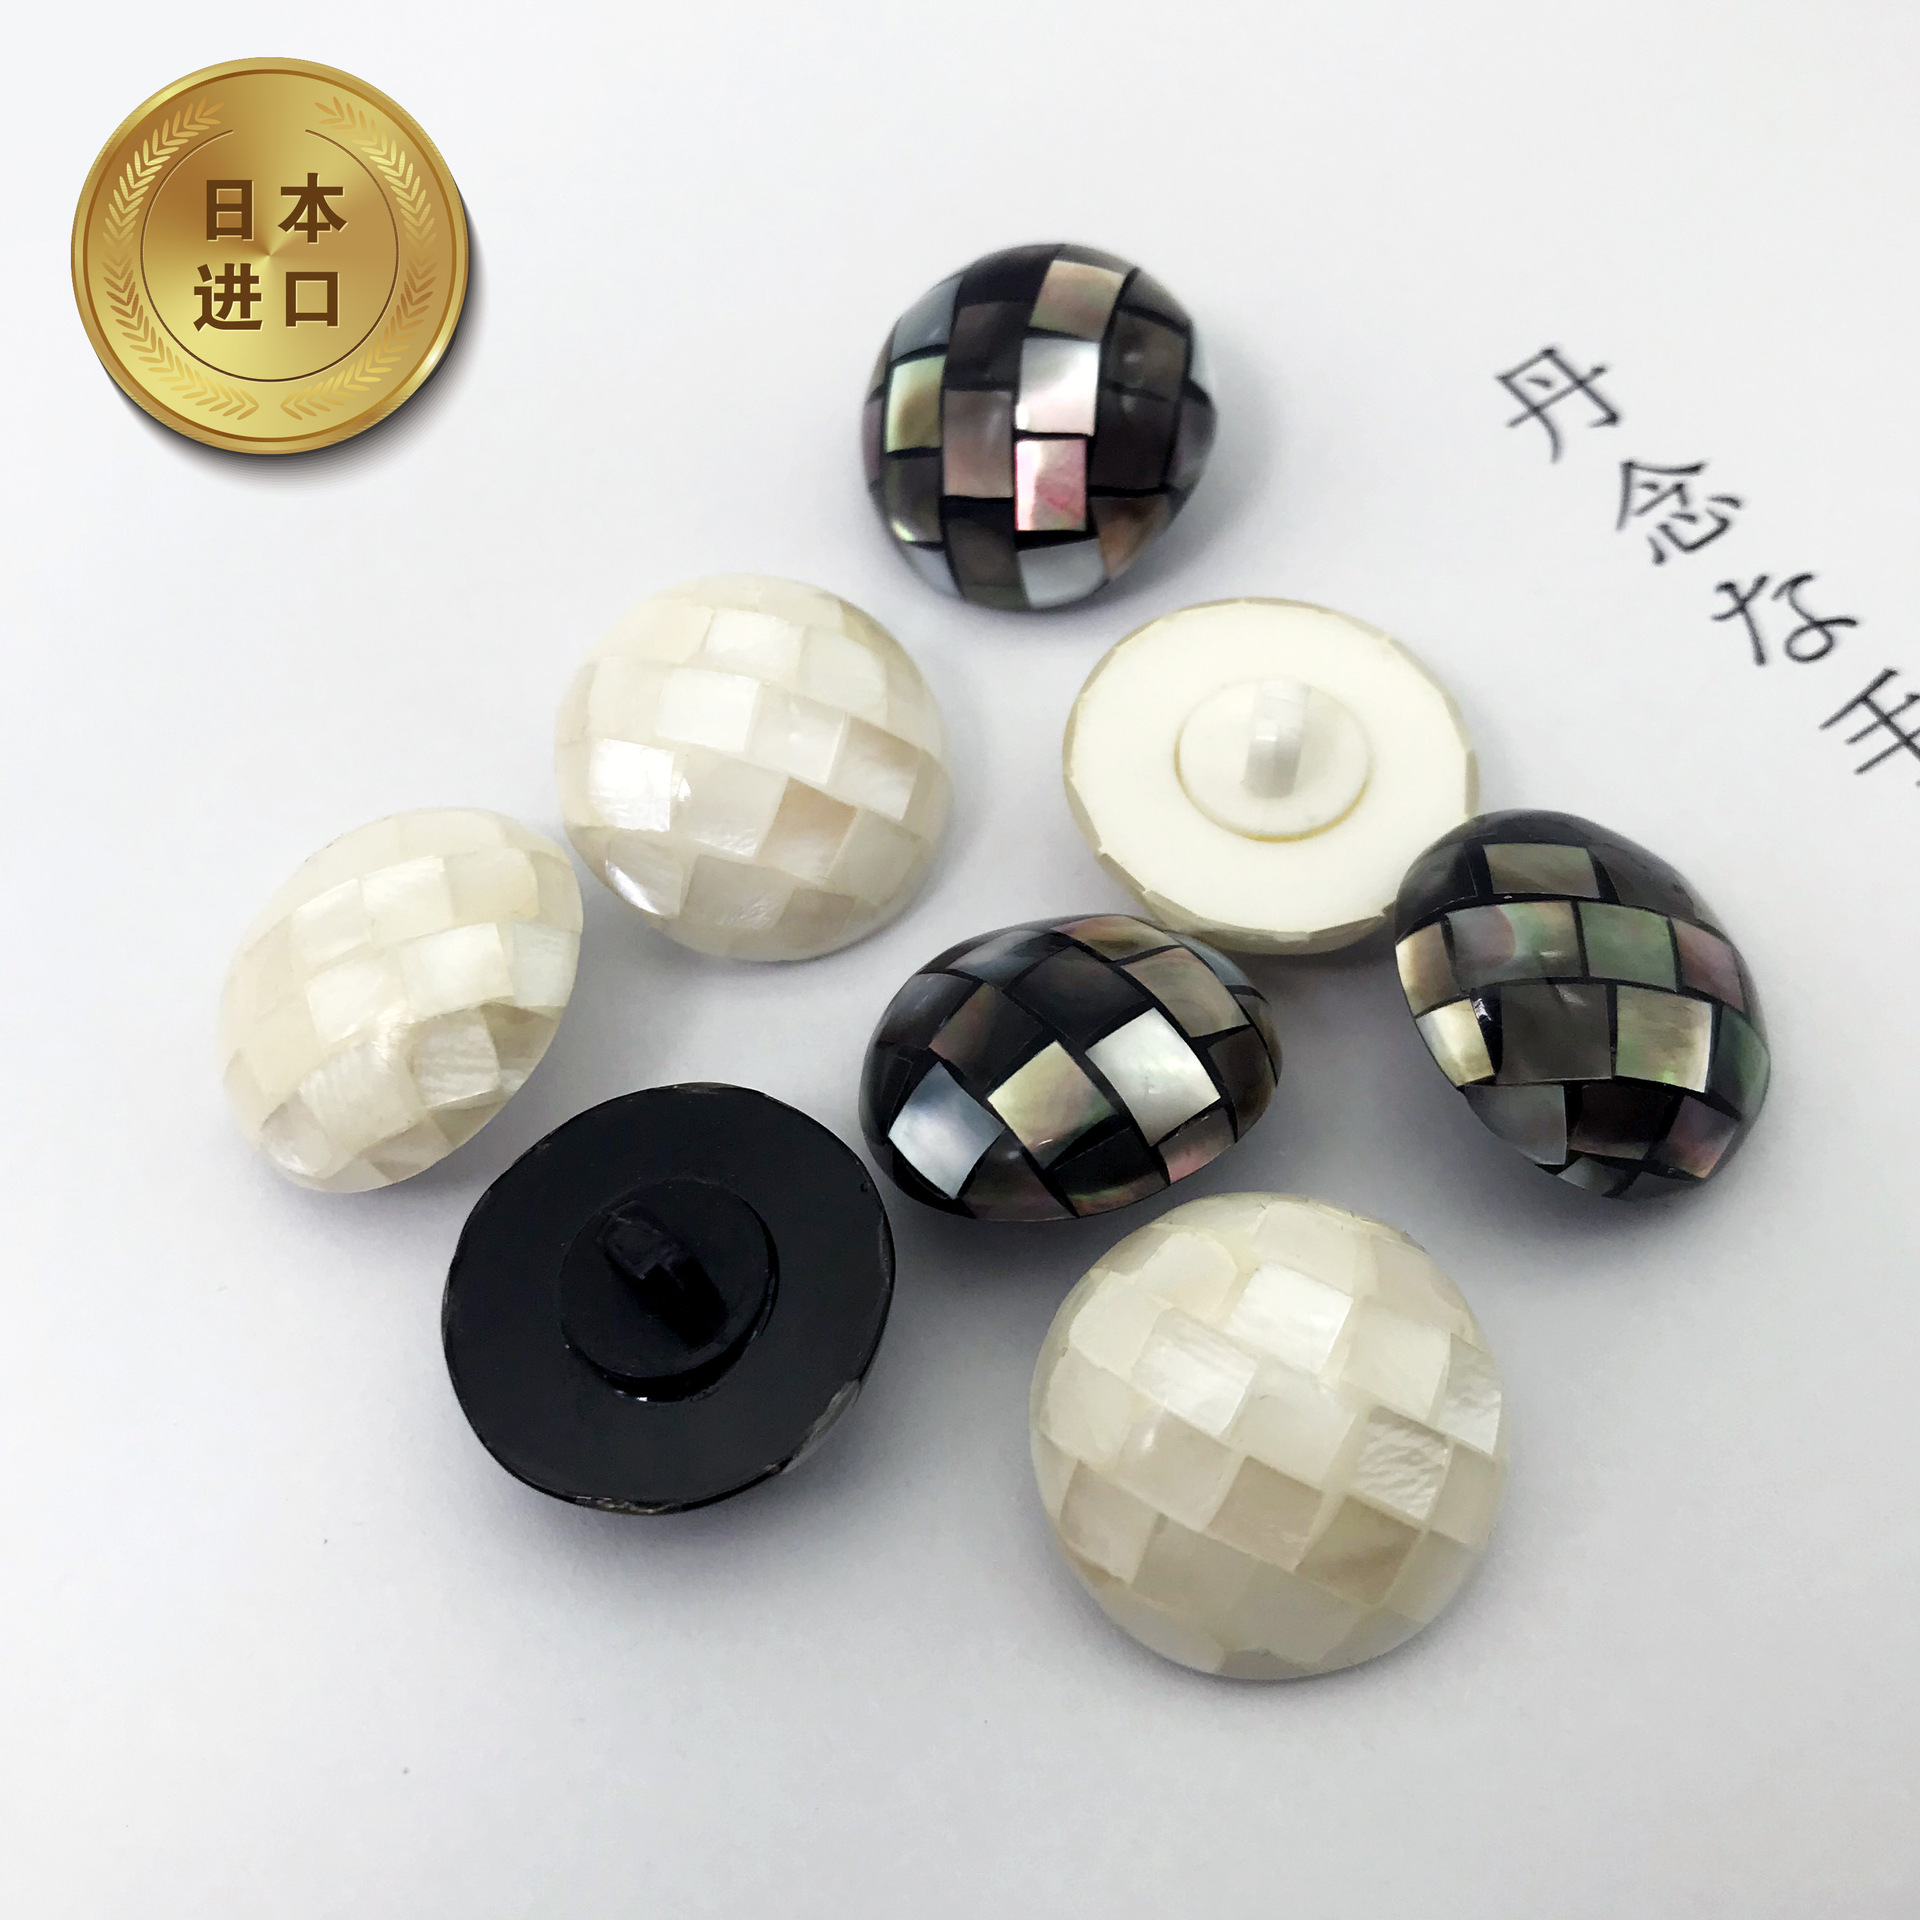 日本进口半球蘑菇形手工工艺马赛克镶嵌拼接贝壳钮扣立脚扣子纽扣